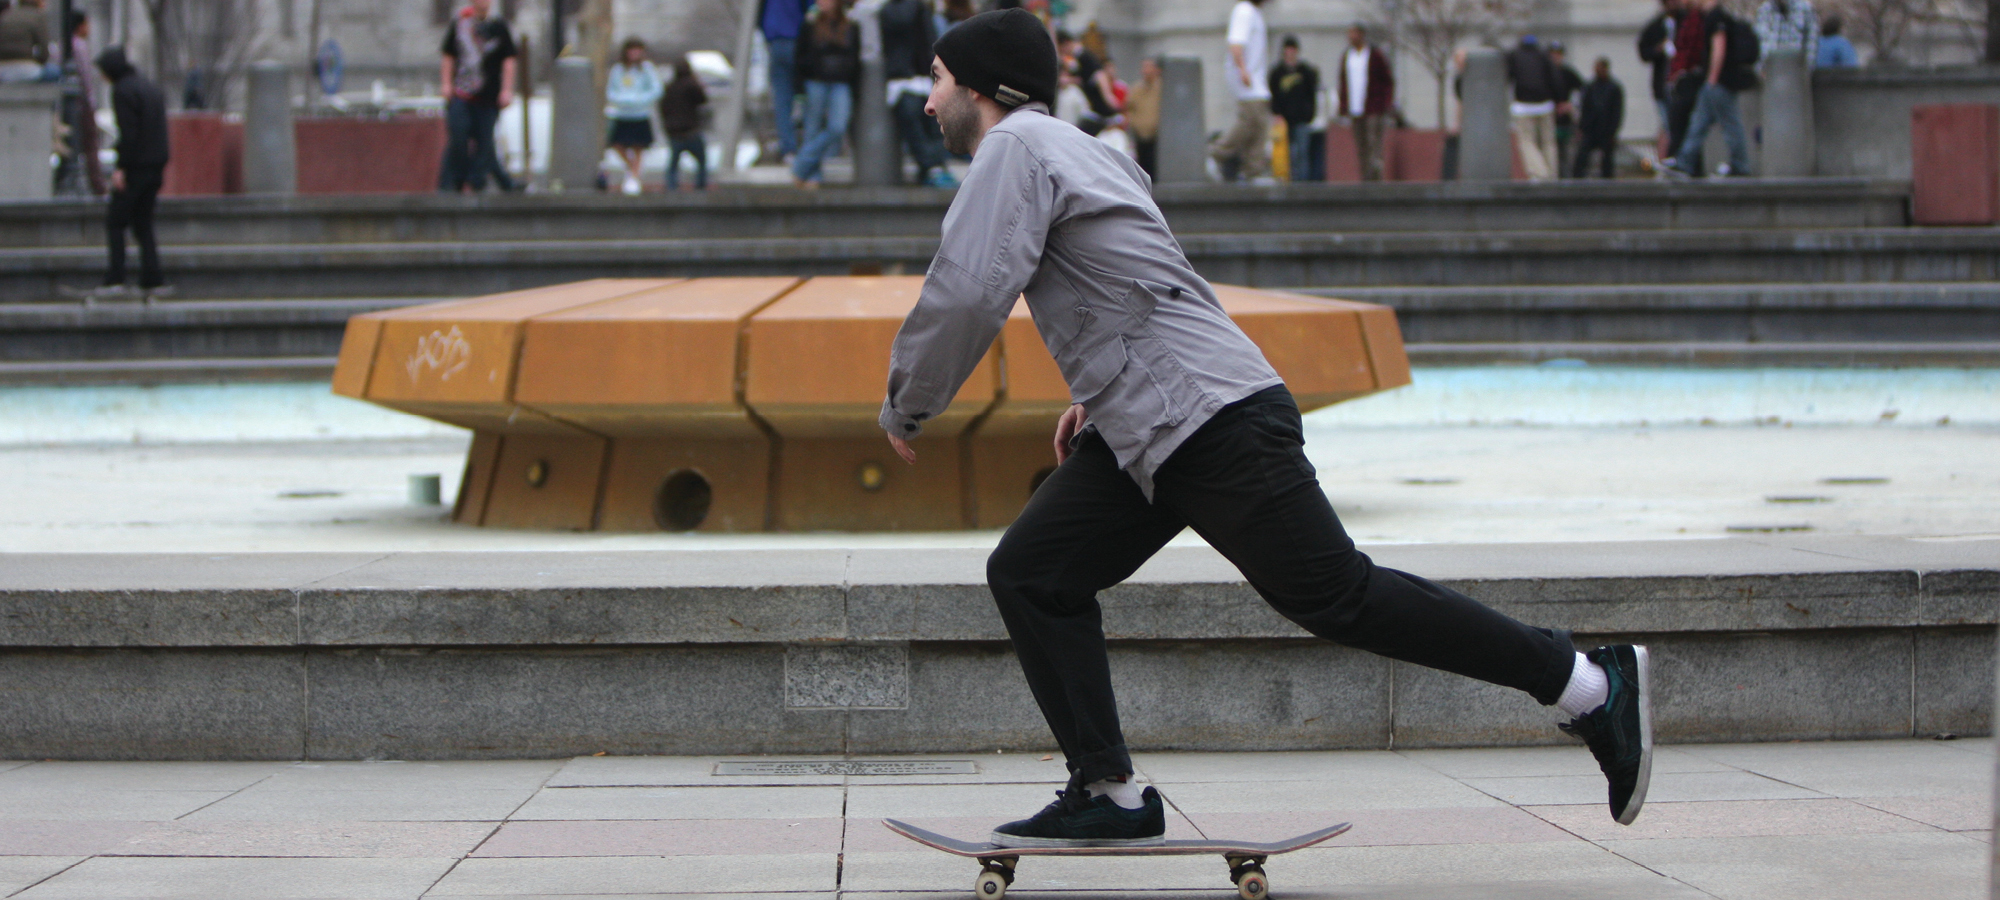 Skateboarder in LOVE Park